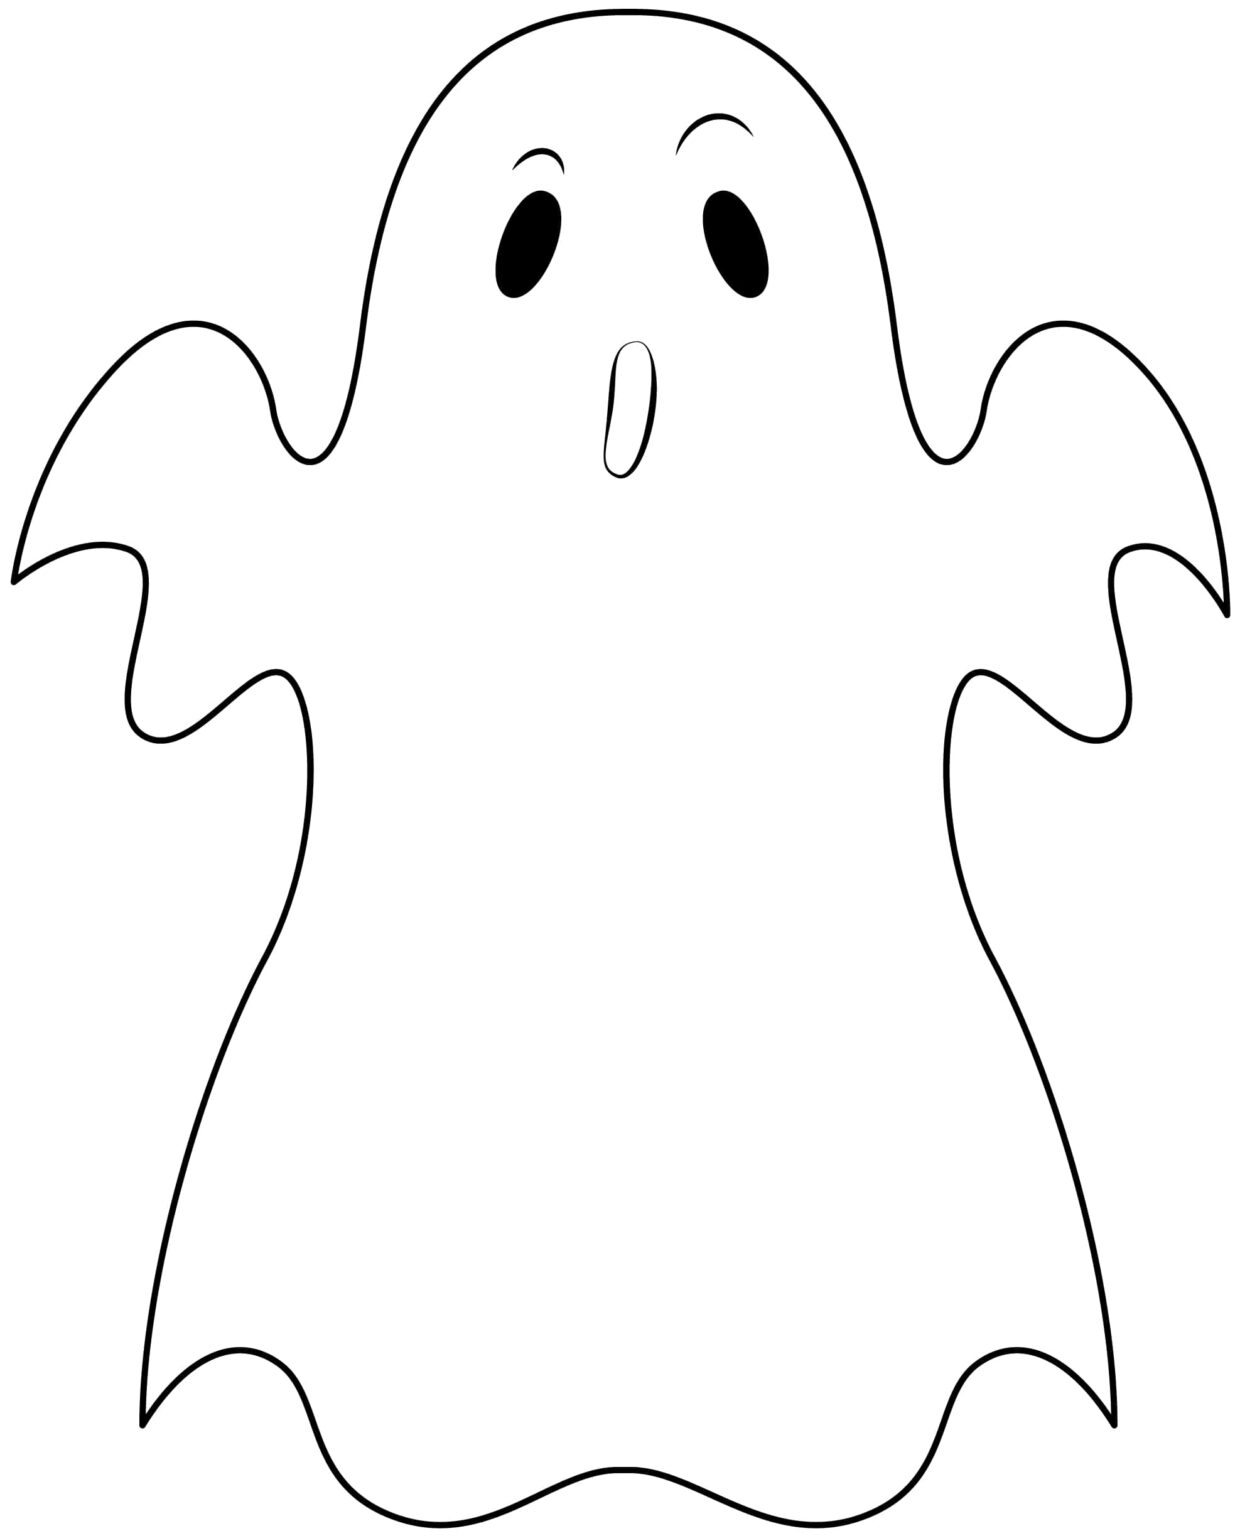 Printable Halloween Ghost Stencils - Printable JD